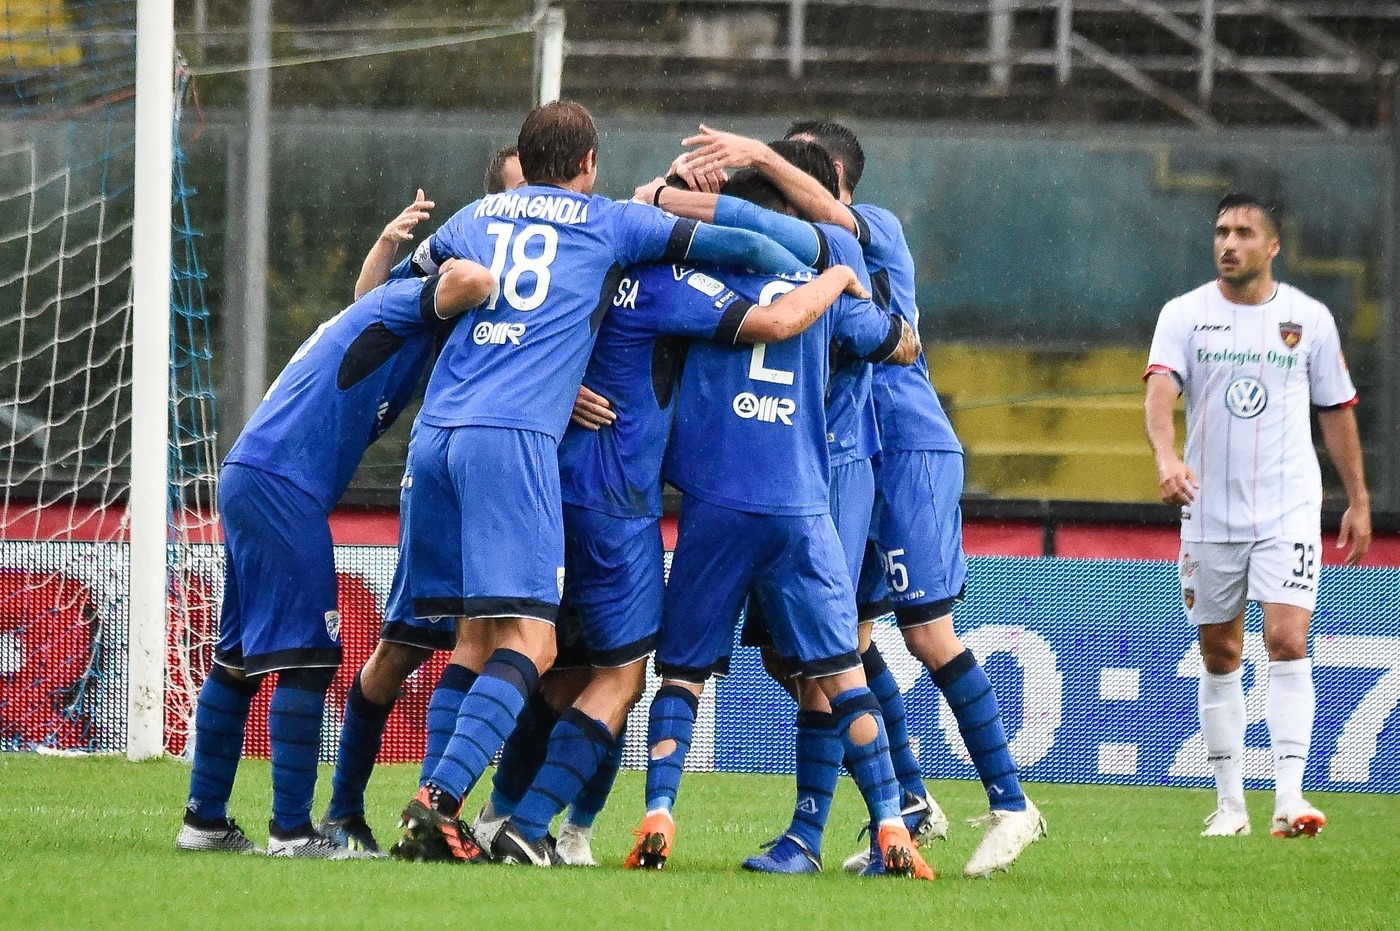 Serie B, Brescia-Spezia 27 gennaio: analisi e pronostico della giornata della seconda divisione calcistica italiana